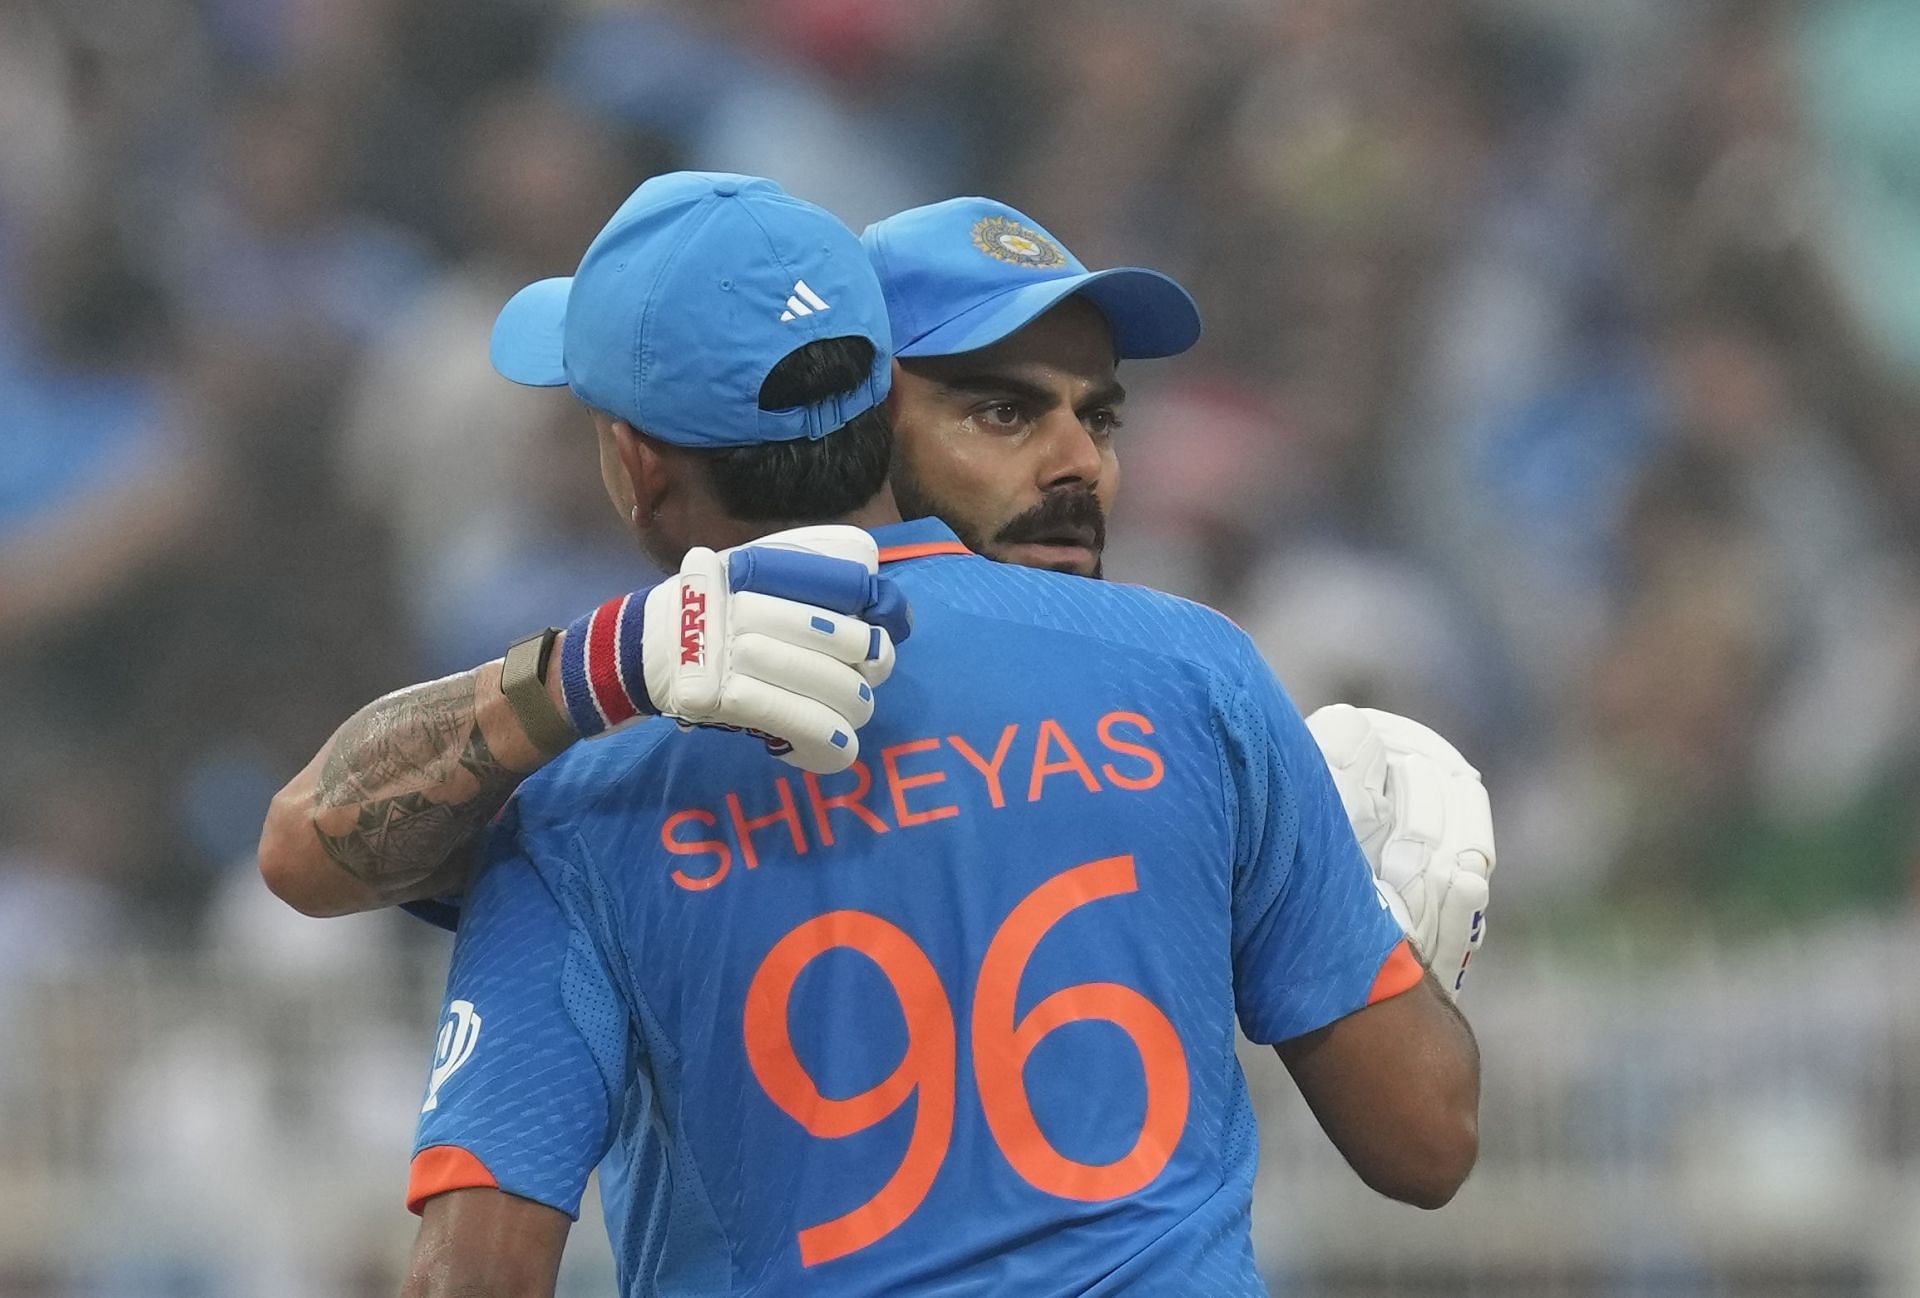 Shreyas Iyer and Virat Kohli strung together a 134-run third-wicket partnership. [P/C: AP]